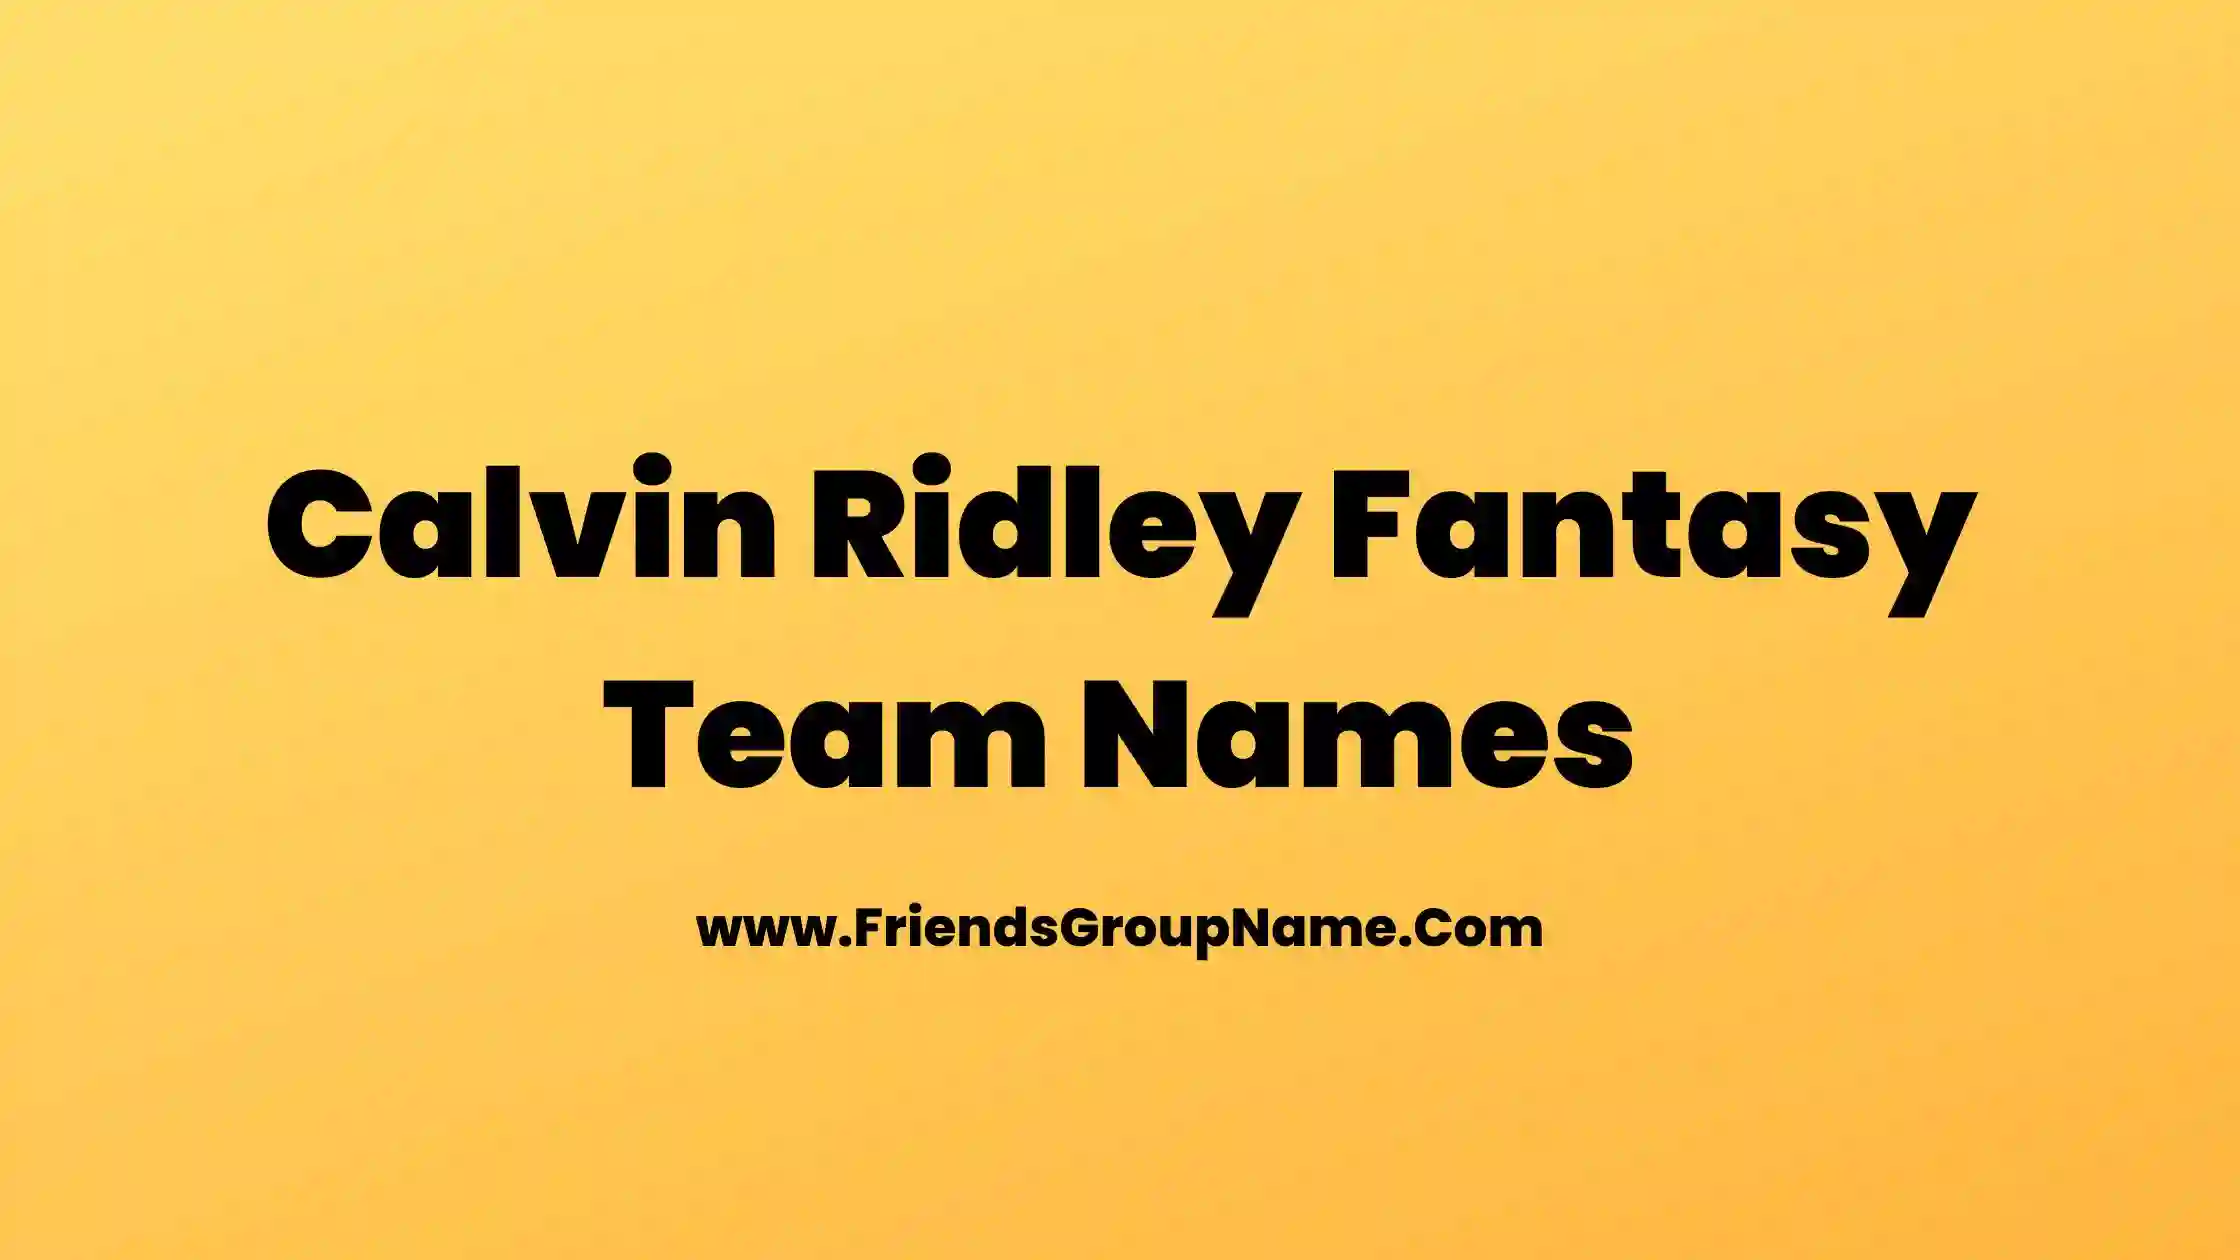 Calvin Ridley Fantasy Team Names